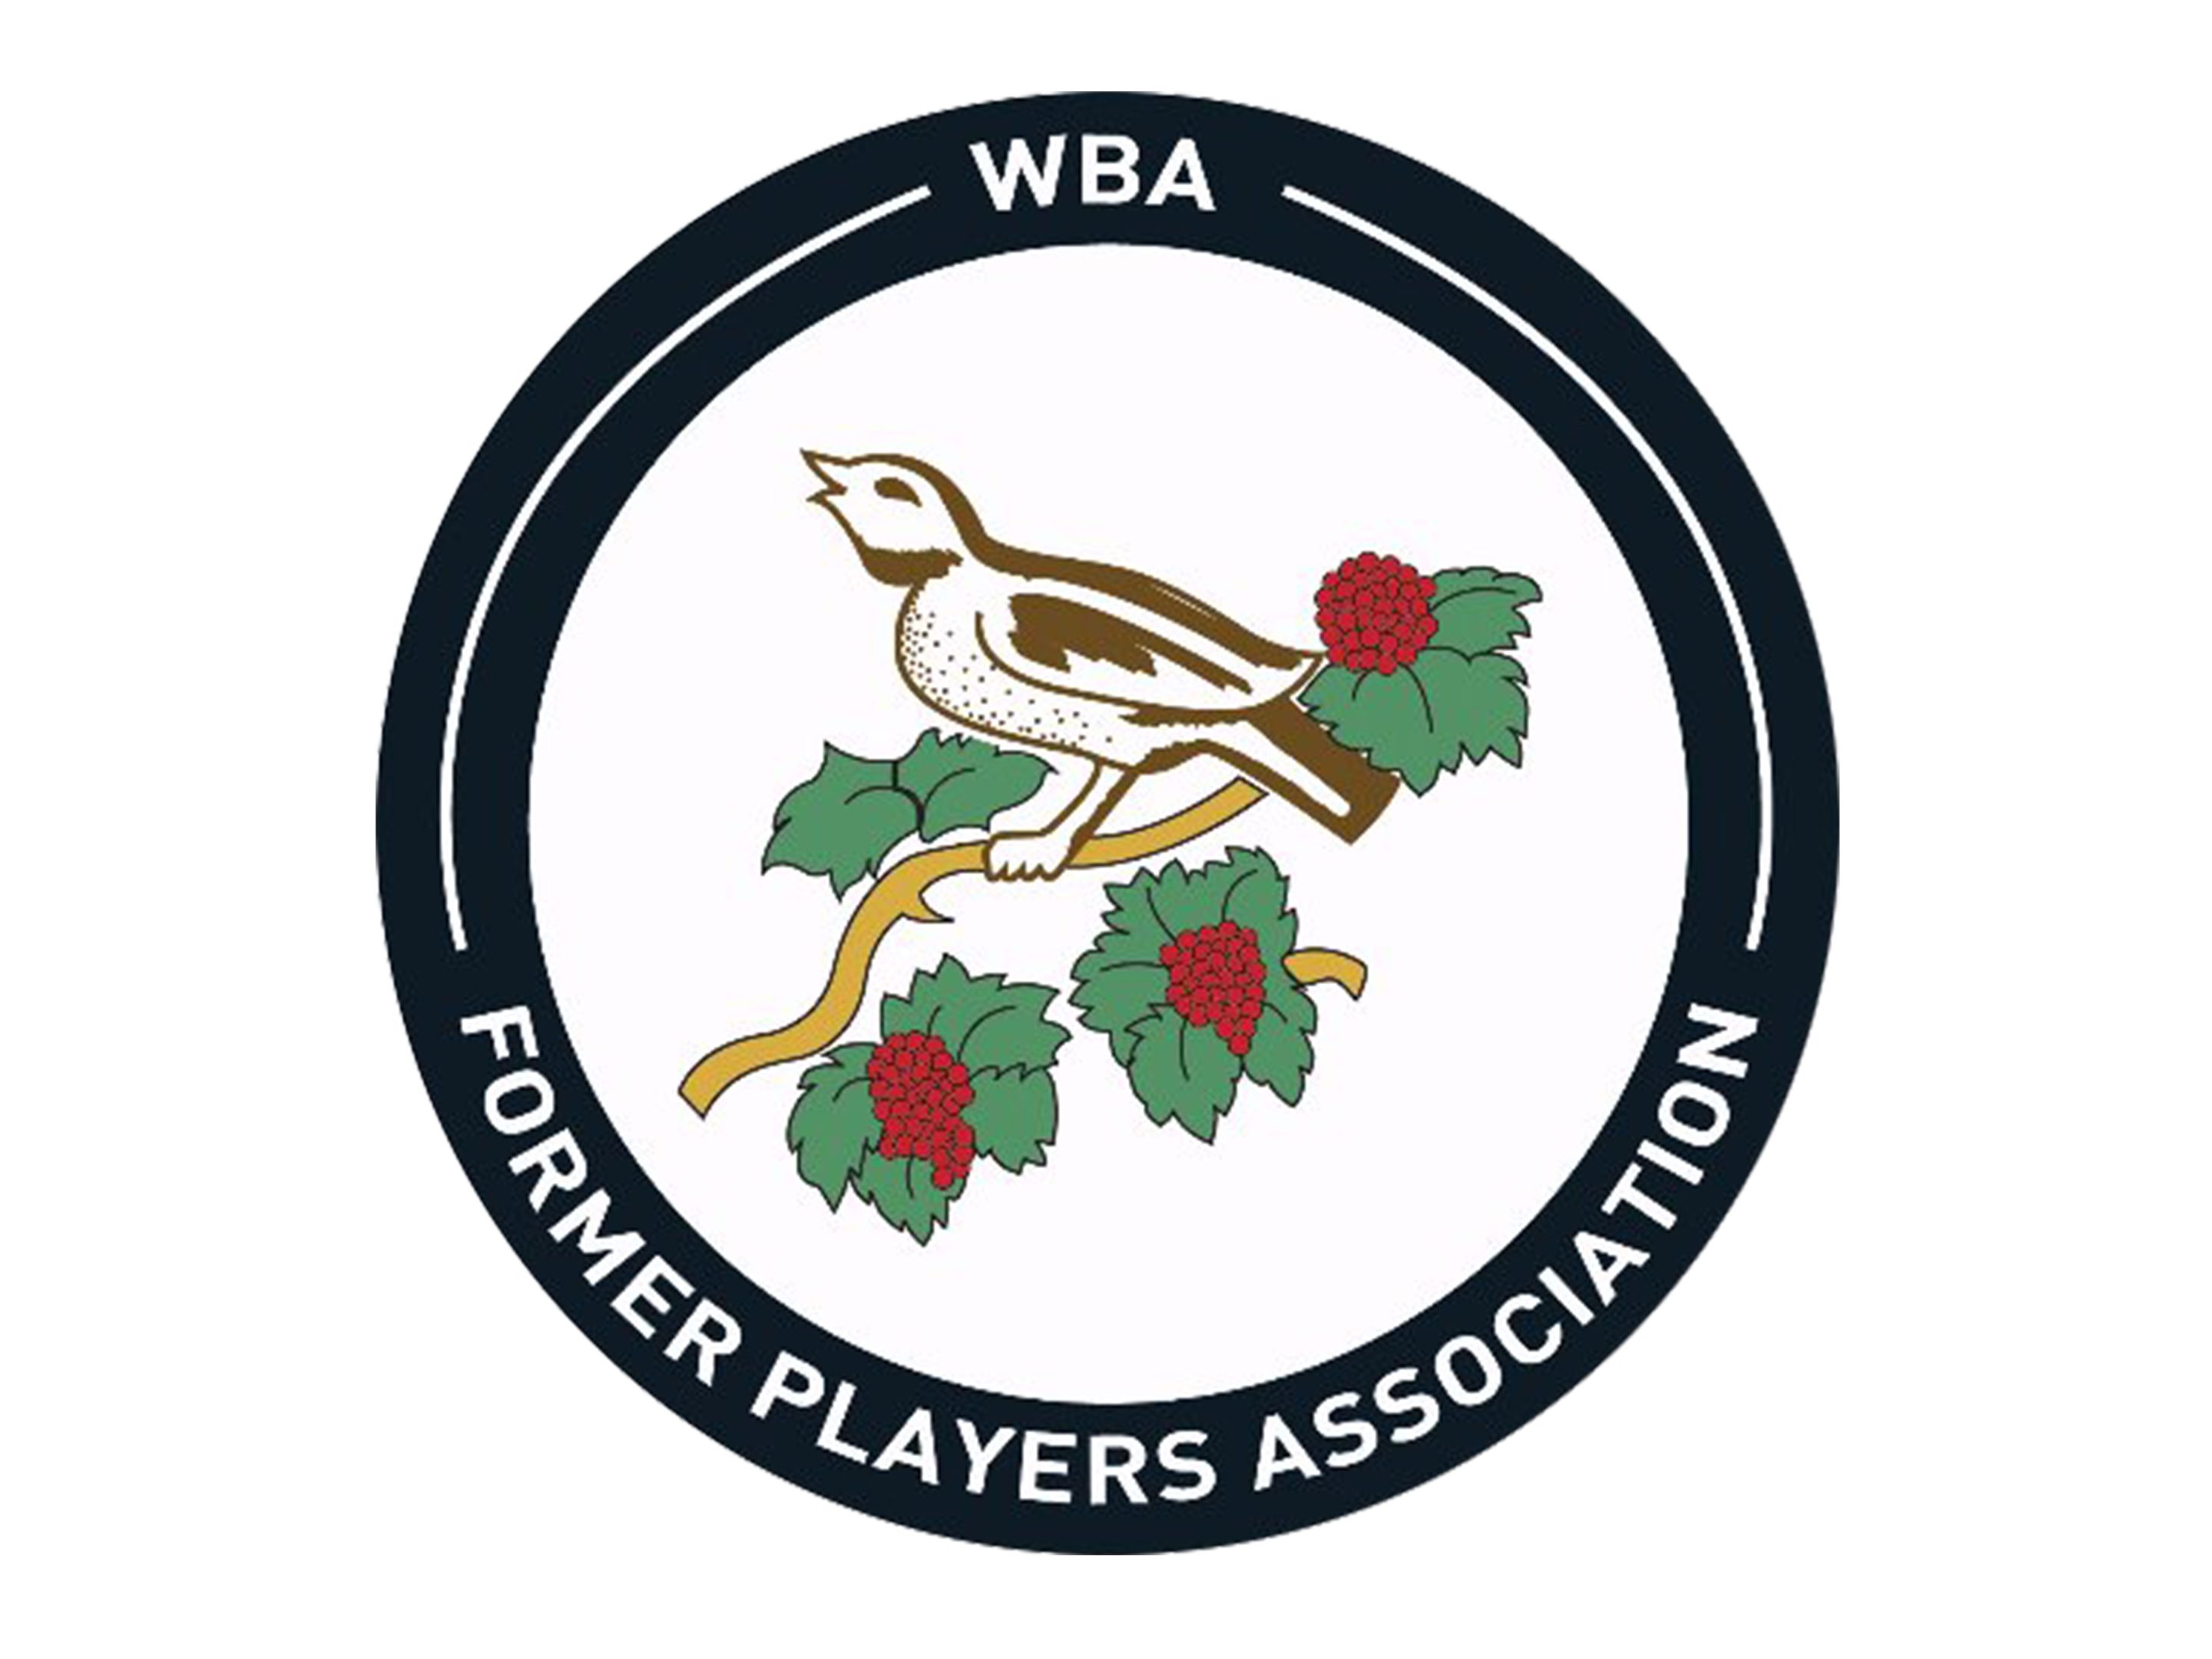 WBA Former Players Association